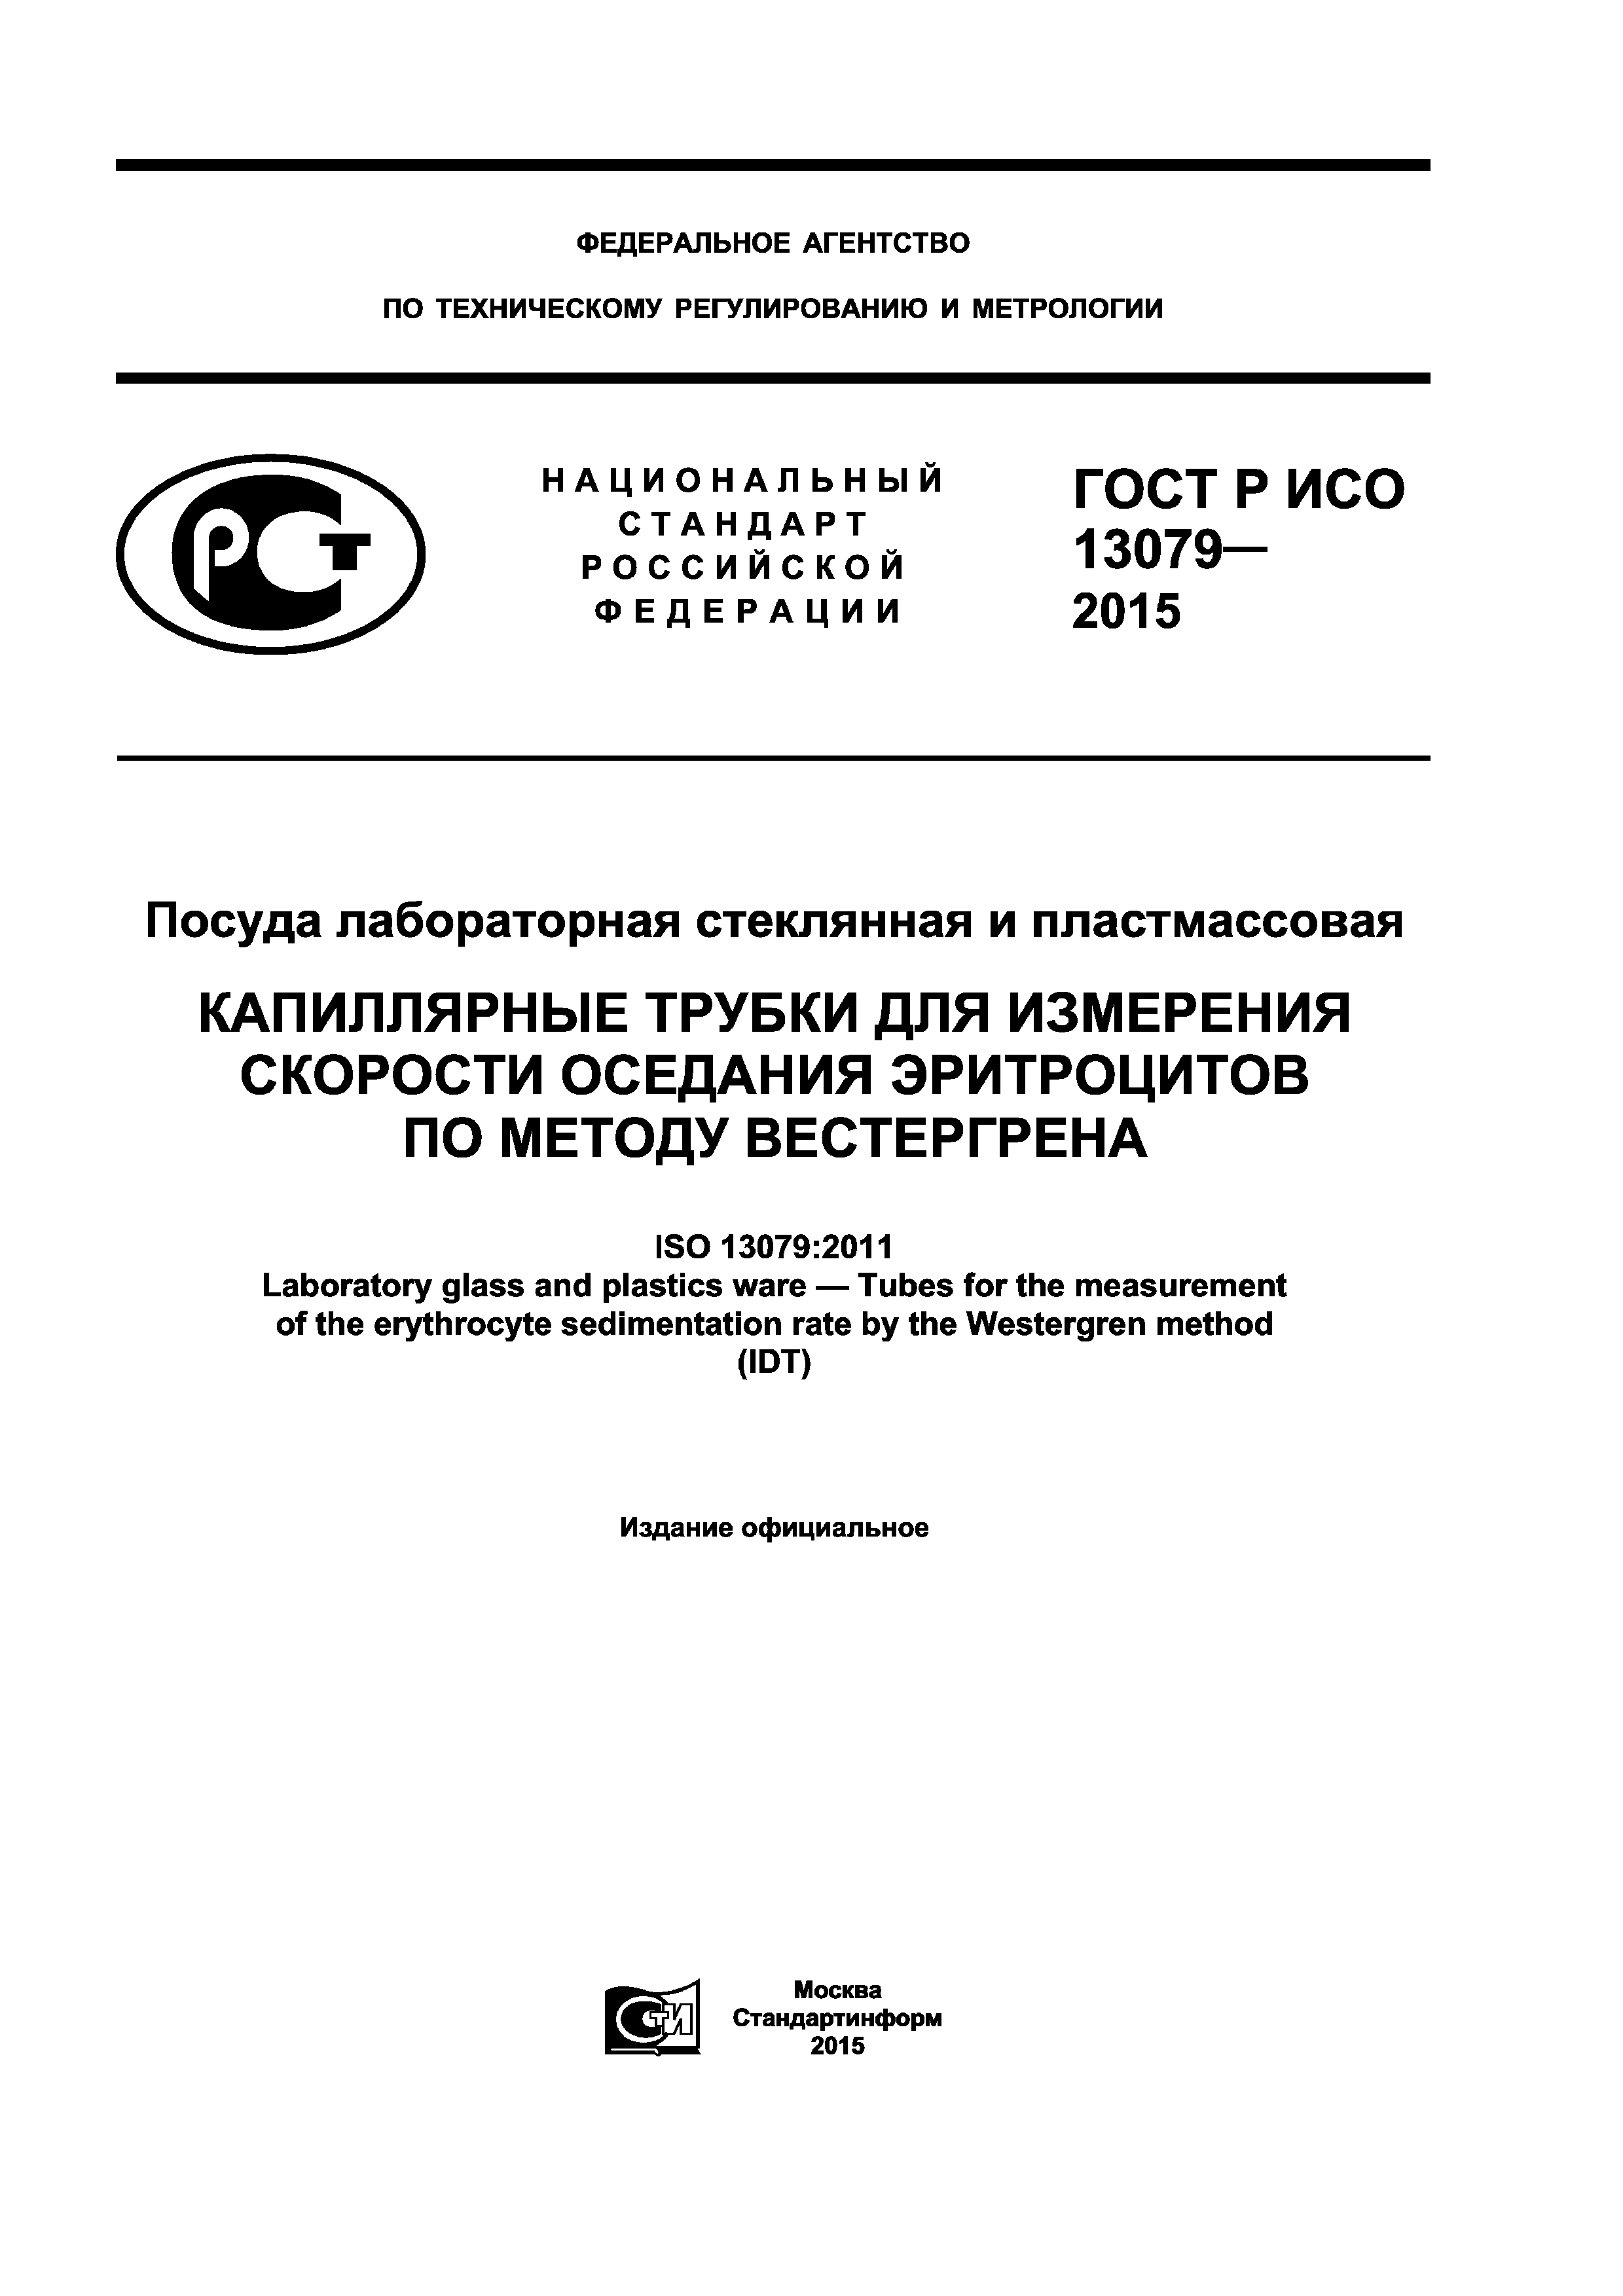 ГОСТ Р ИСО 13079-2015